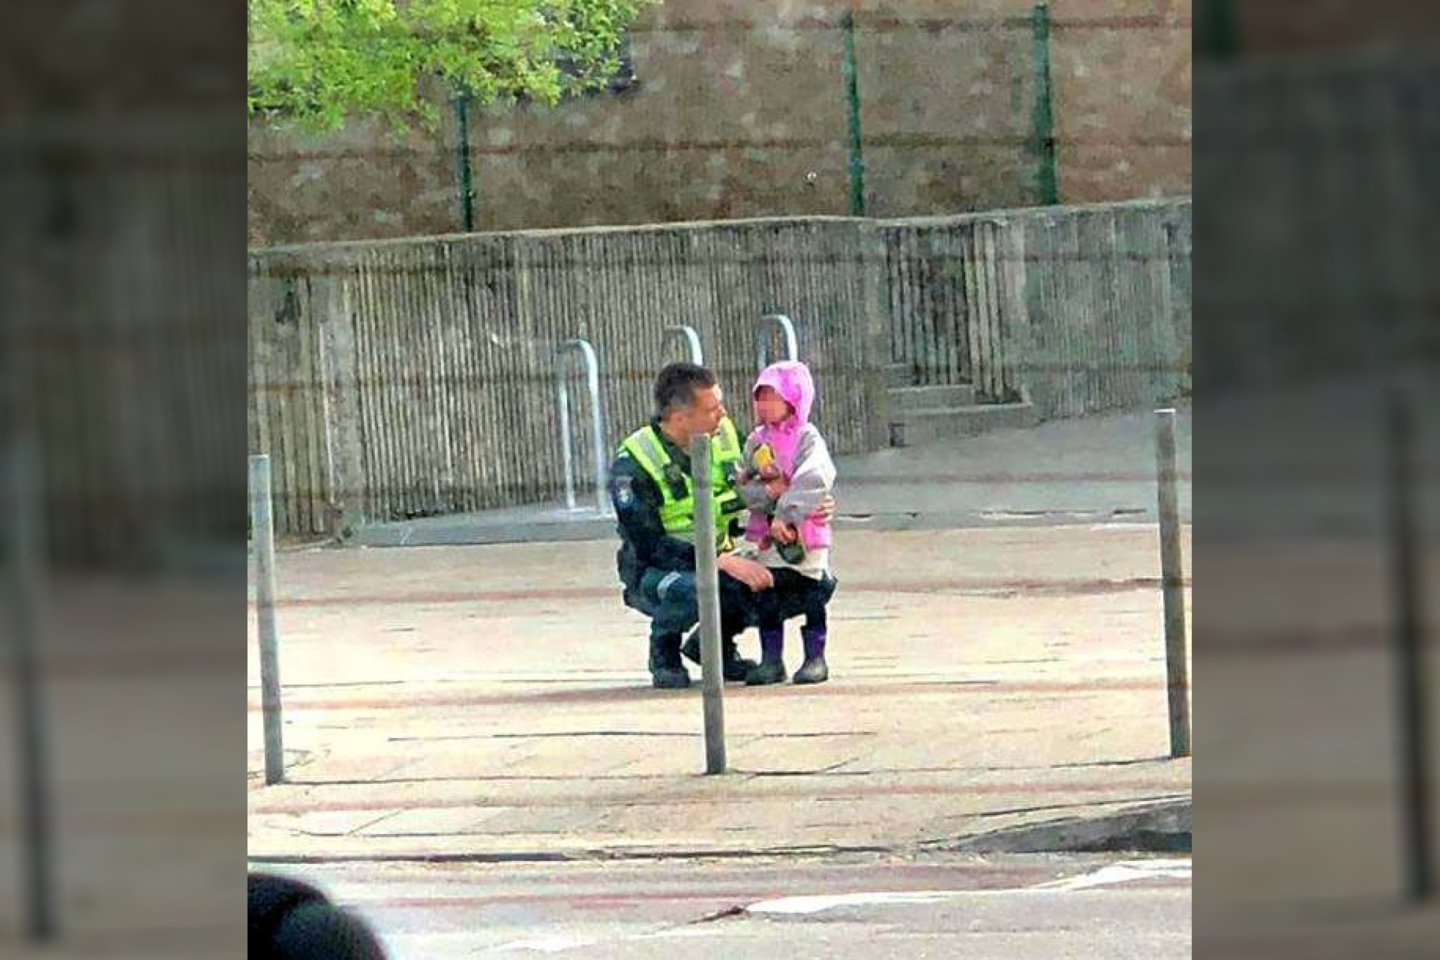  Policija paviešino jautrią istoriją – pareigūnas šluostė verkiančios mergaitės ašaras.<br> Facebook/Lietuvos policija nuotr.